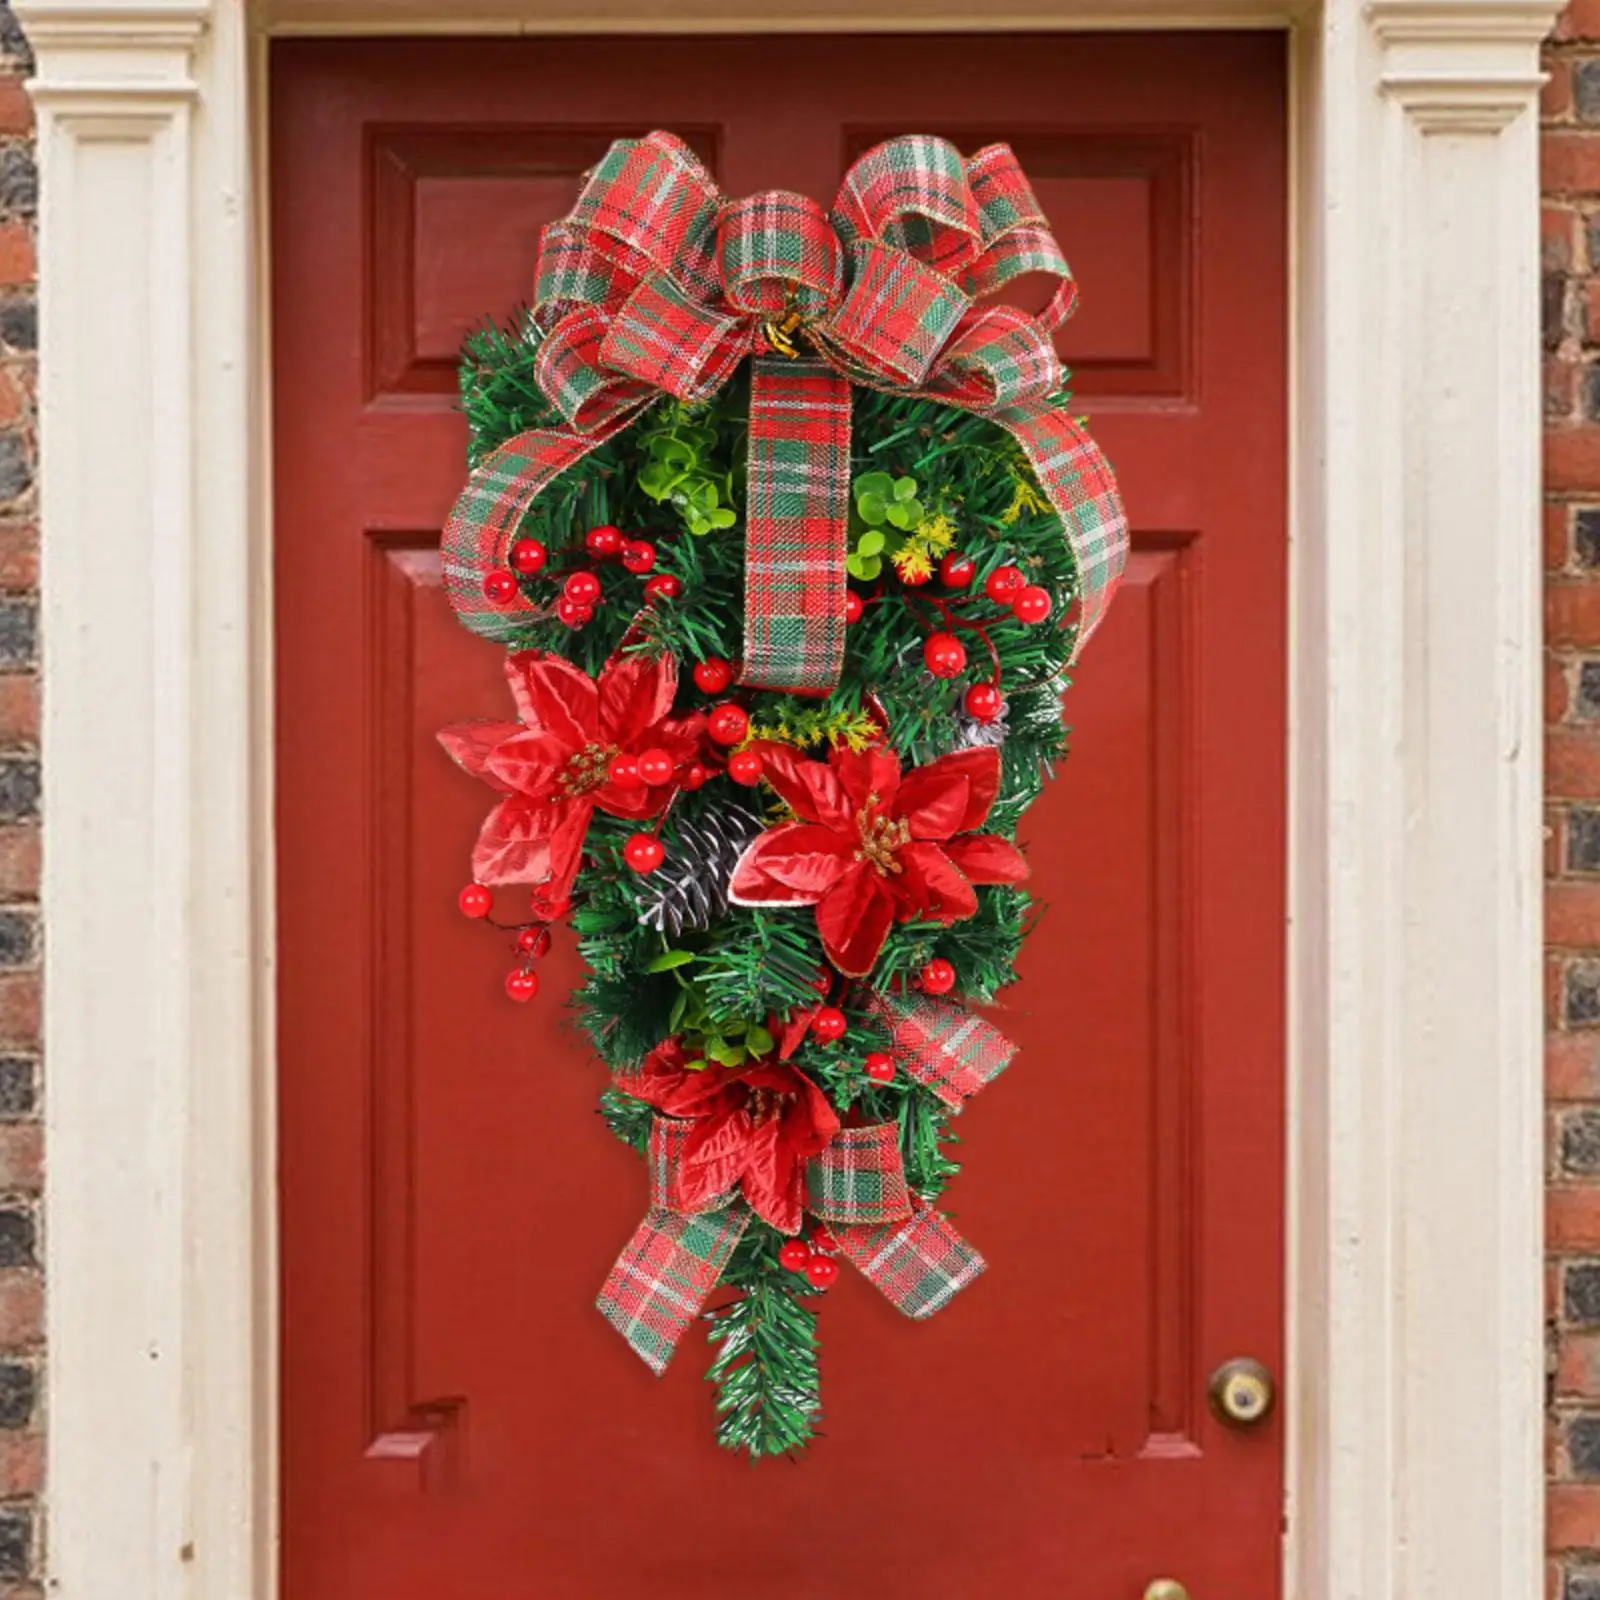 Xmas Door Swag Christmas Decoration Wreath Christmas Wreath Artificial Christmas Wreath for Windows Porch Farmhouse Home Door